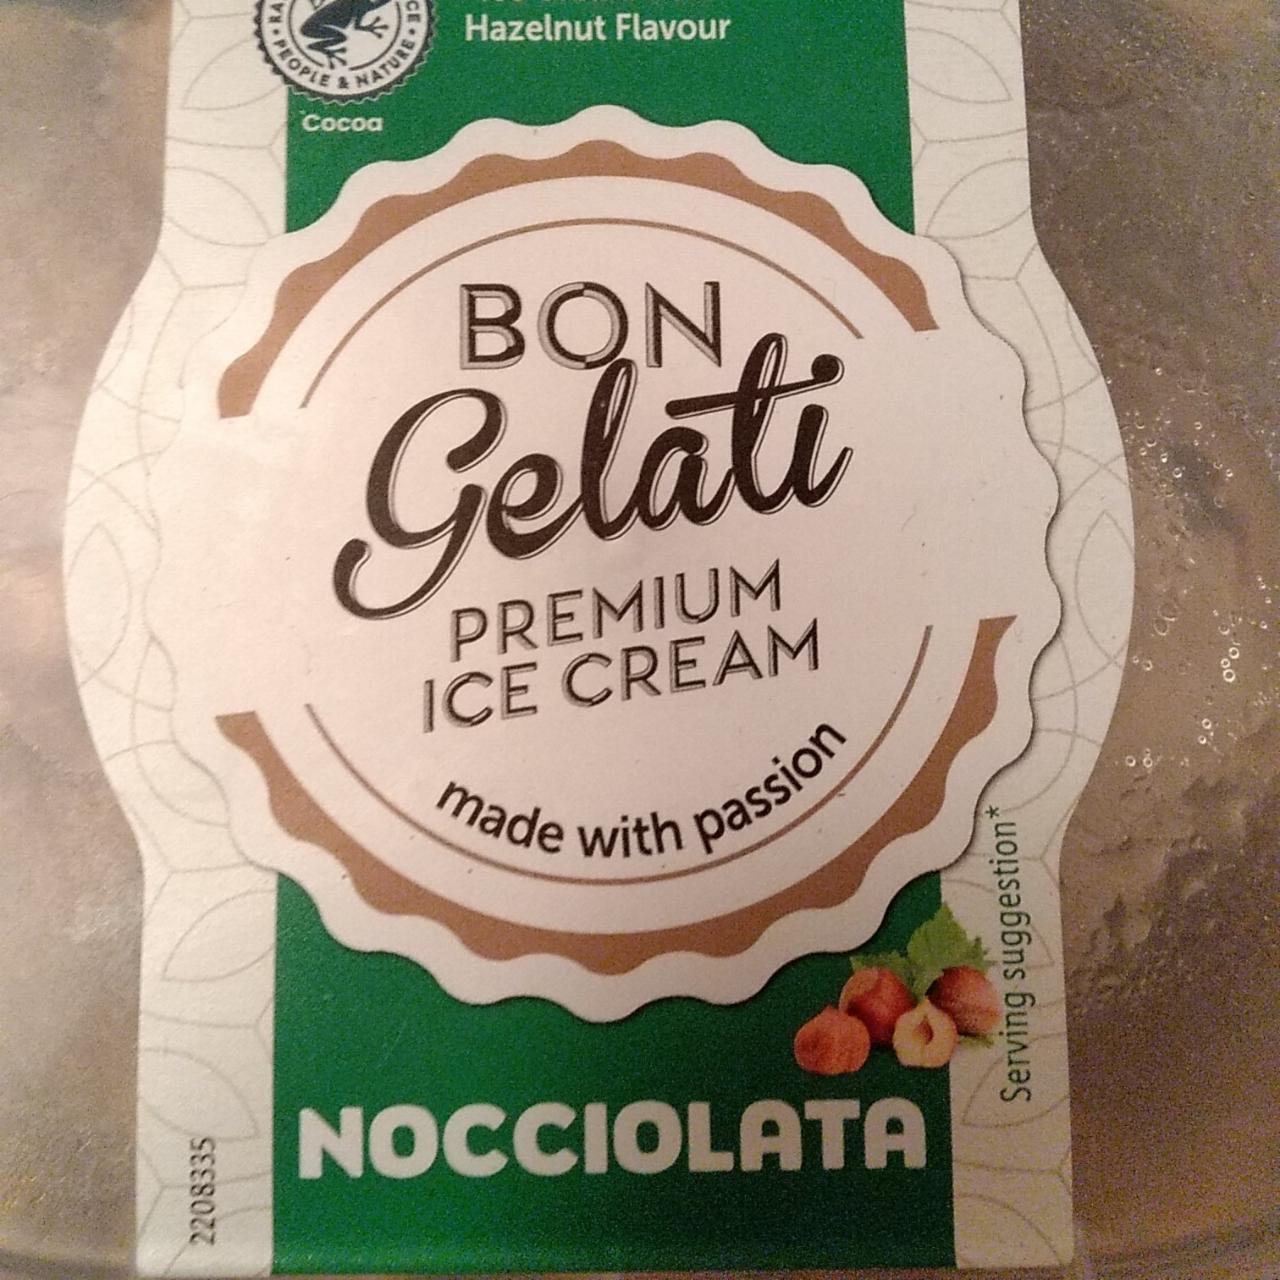 Képek - Nocciolata Mogyoróízű jégkrém mogyorós-kakaós szósszal csavarva Bon Gelati